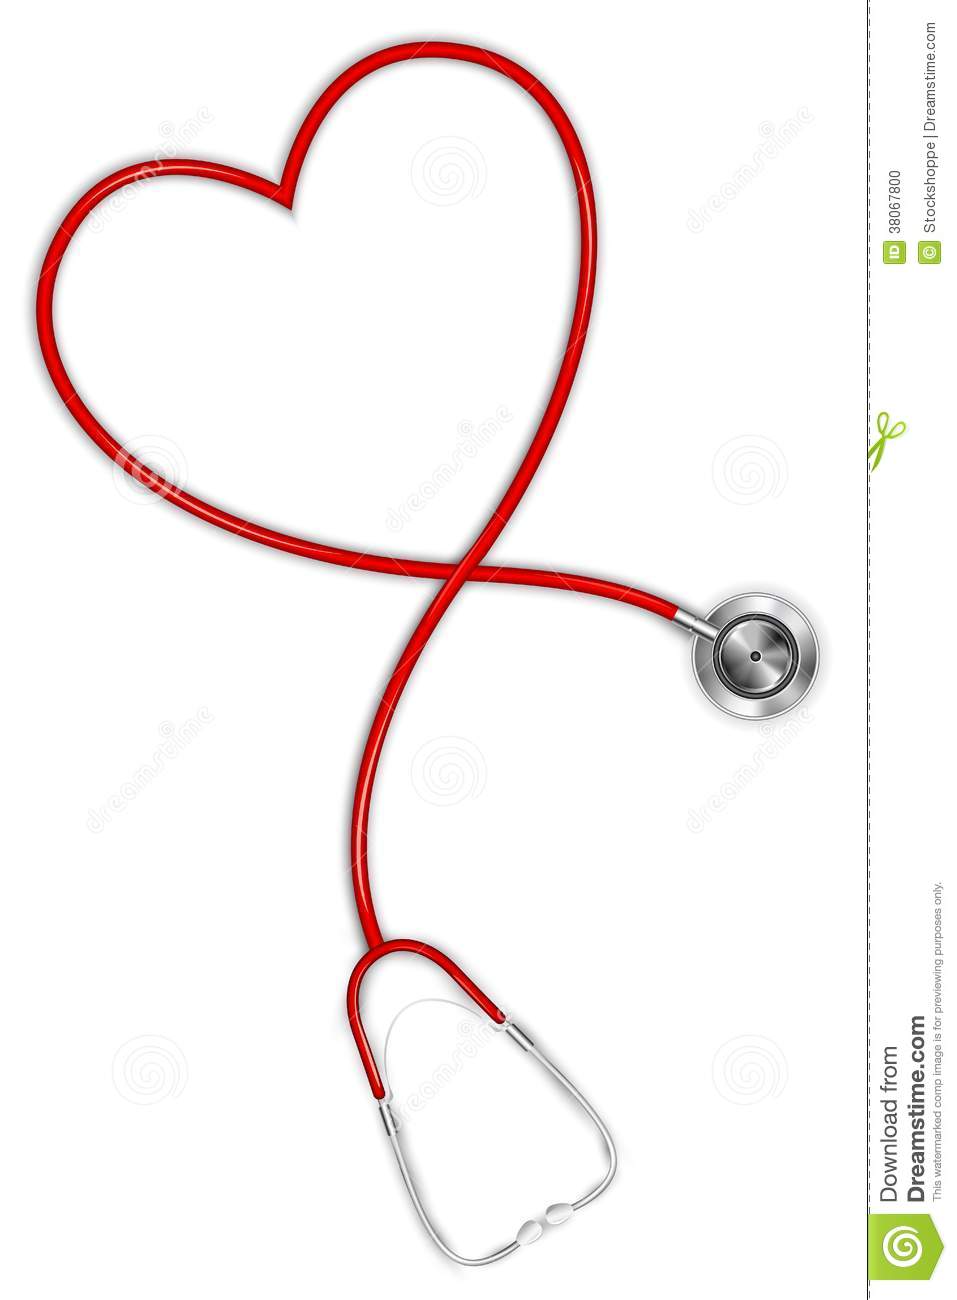 Heart Shaped Stethoscope Stock Photo   Image  38067800